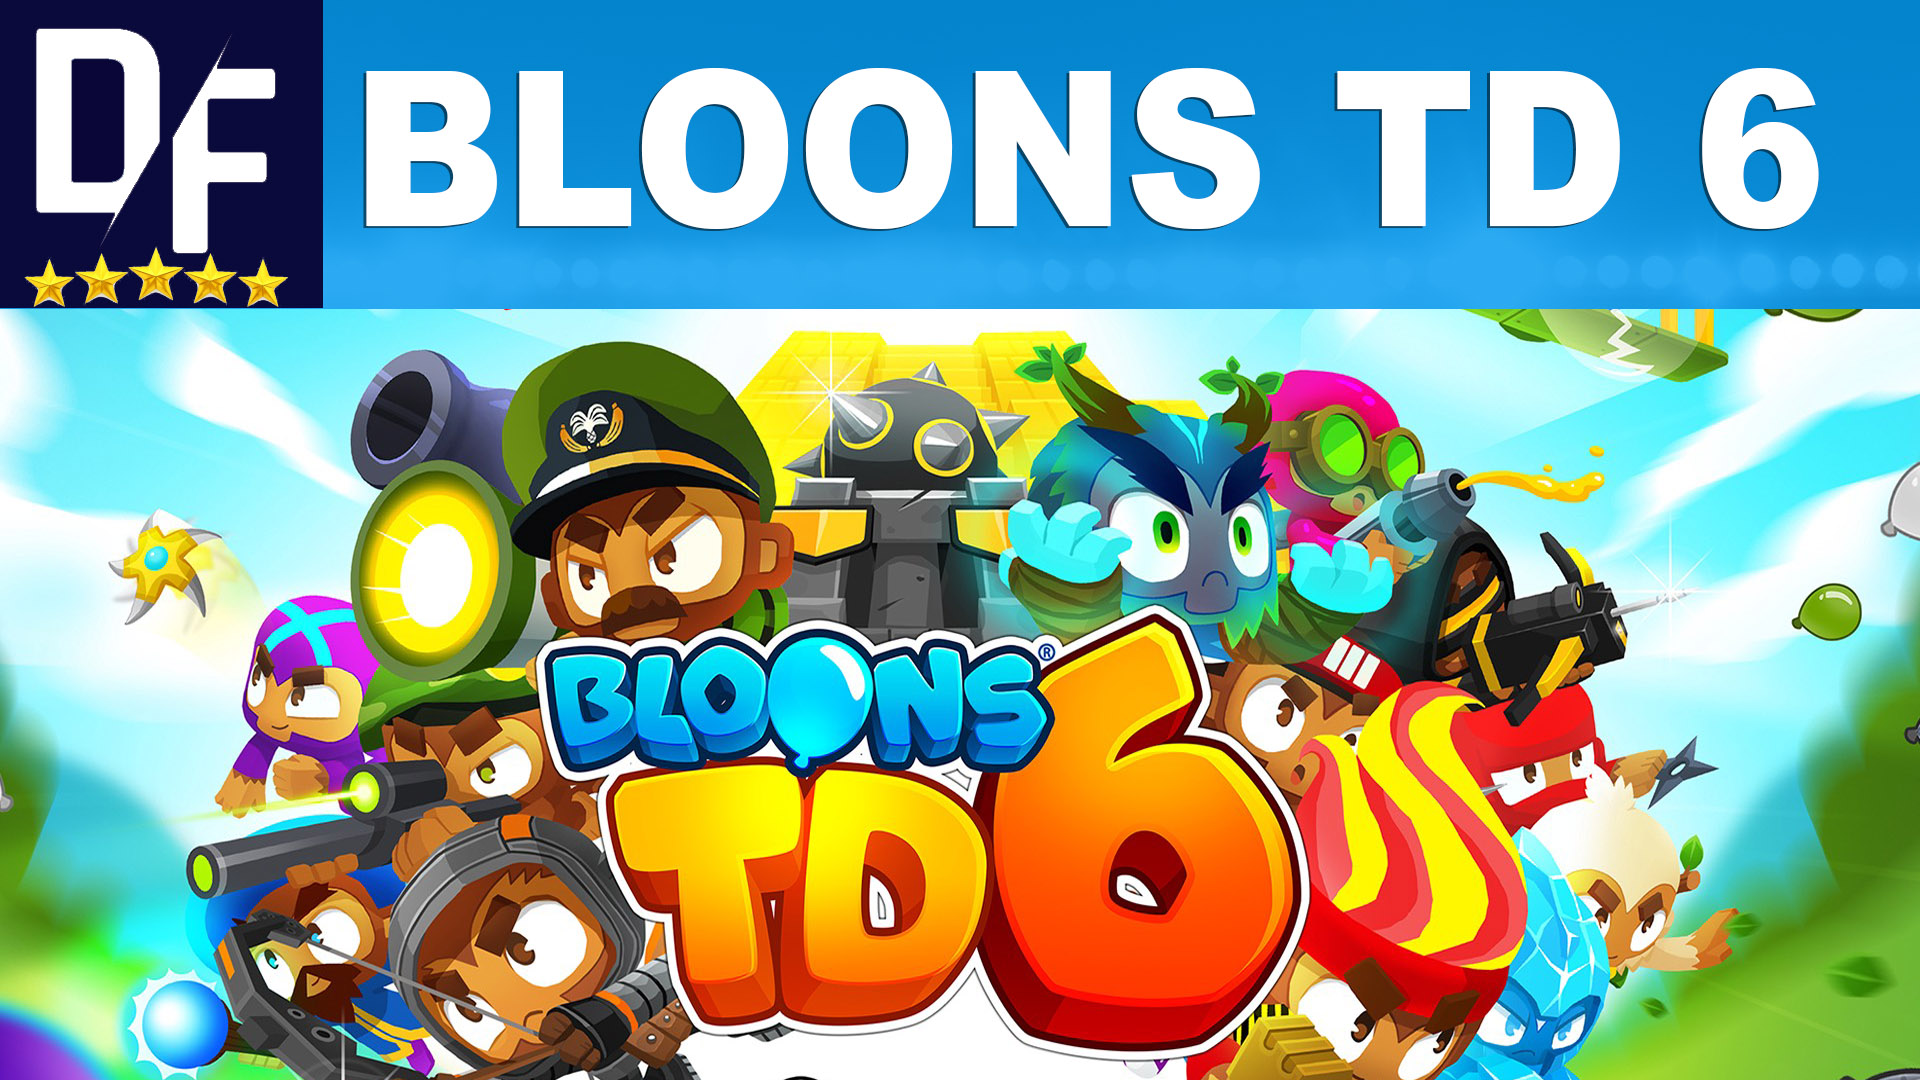 bloons td5 steam hacks